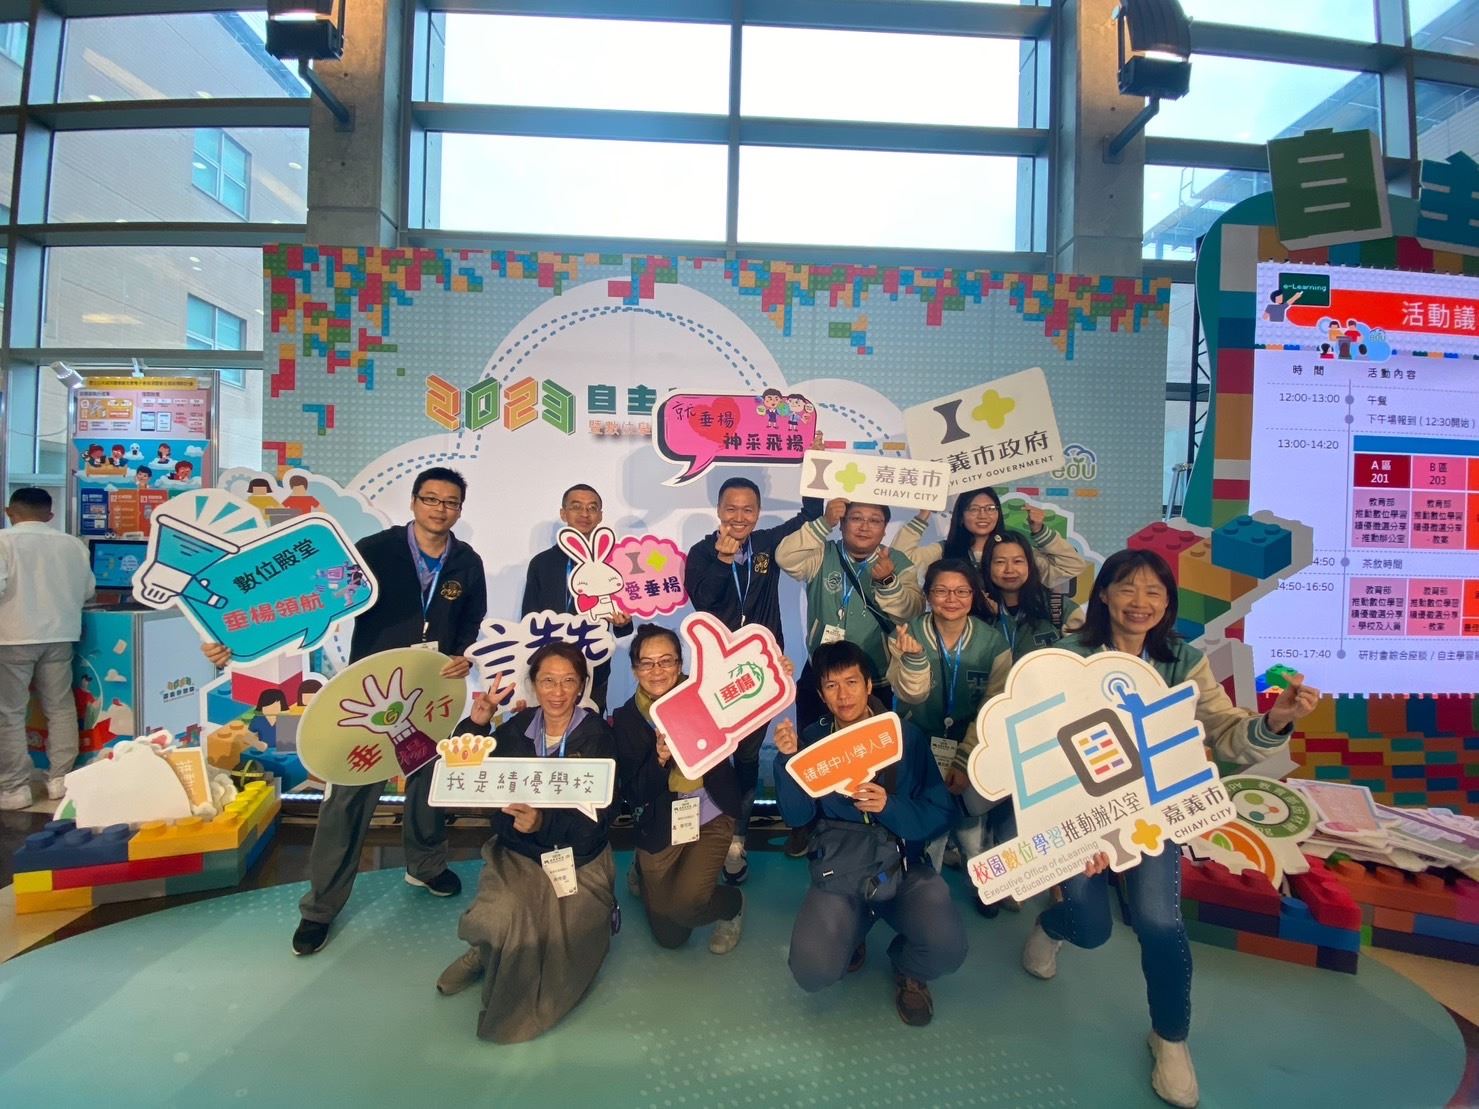 嘉義市發展數位學習有成　榮獲教育部四大類獎項肯定 - 早安台灣新聞 | Morning Taiwan News